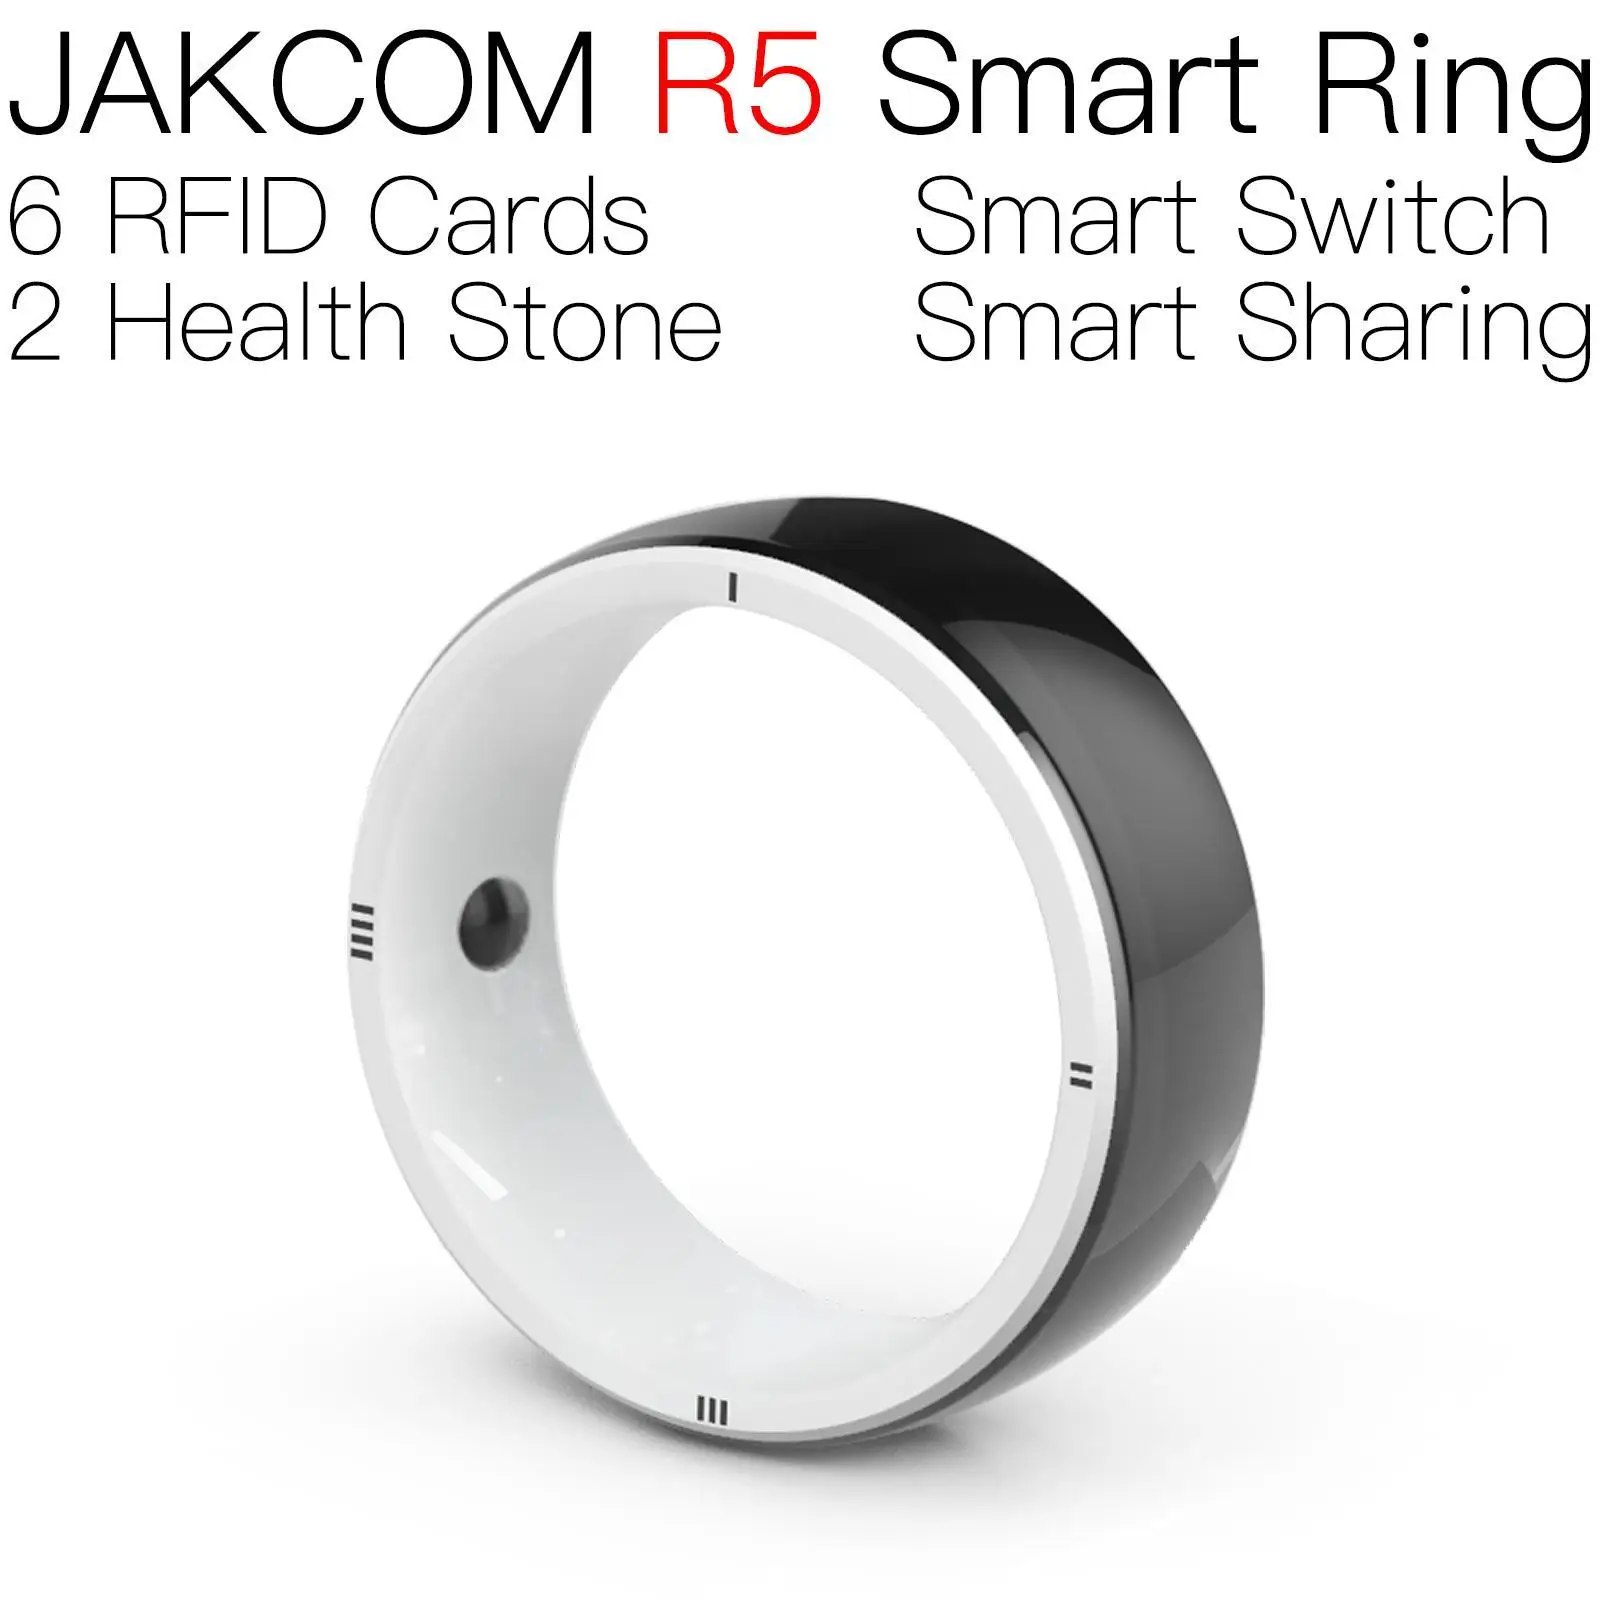 

Умное кольцо JAKCOM R5, лучше, чем distake deauther, часы, смартфон i14 max, женщина, ничего 1, мышь, Супер копия